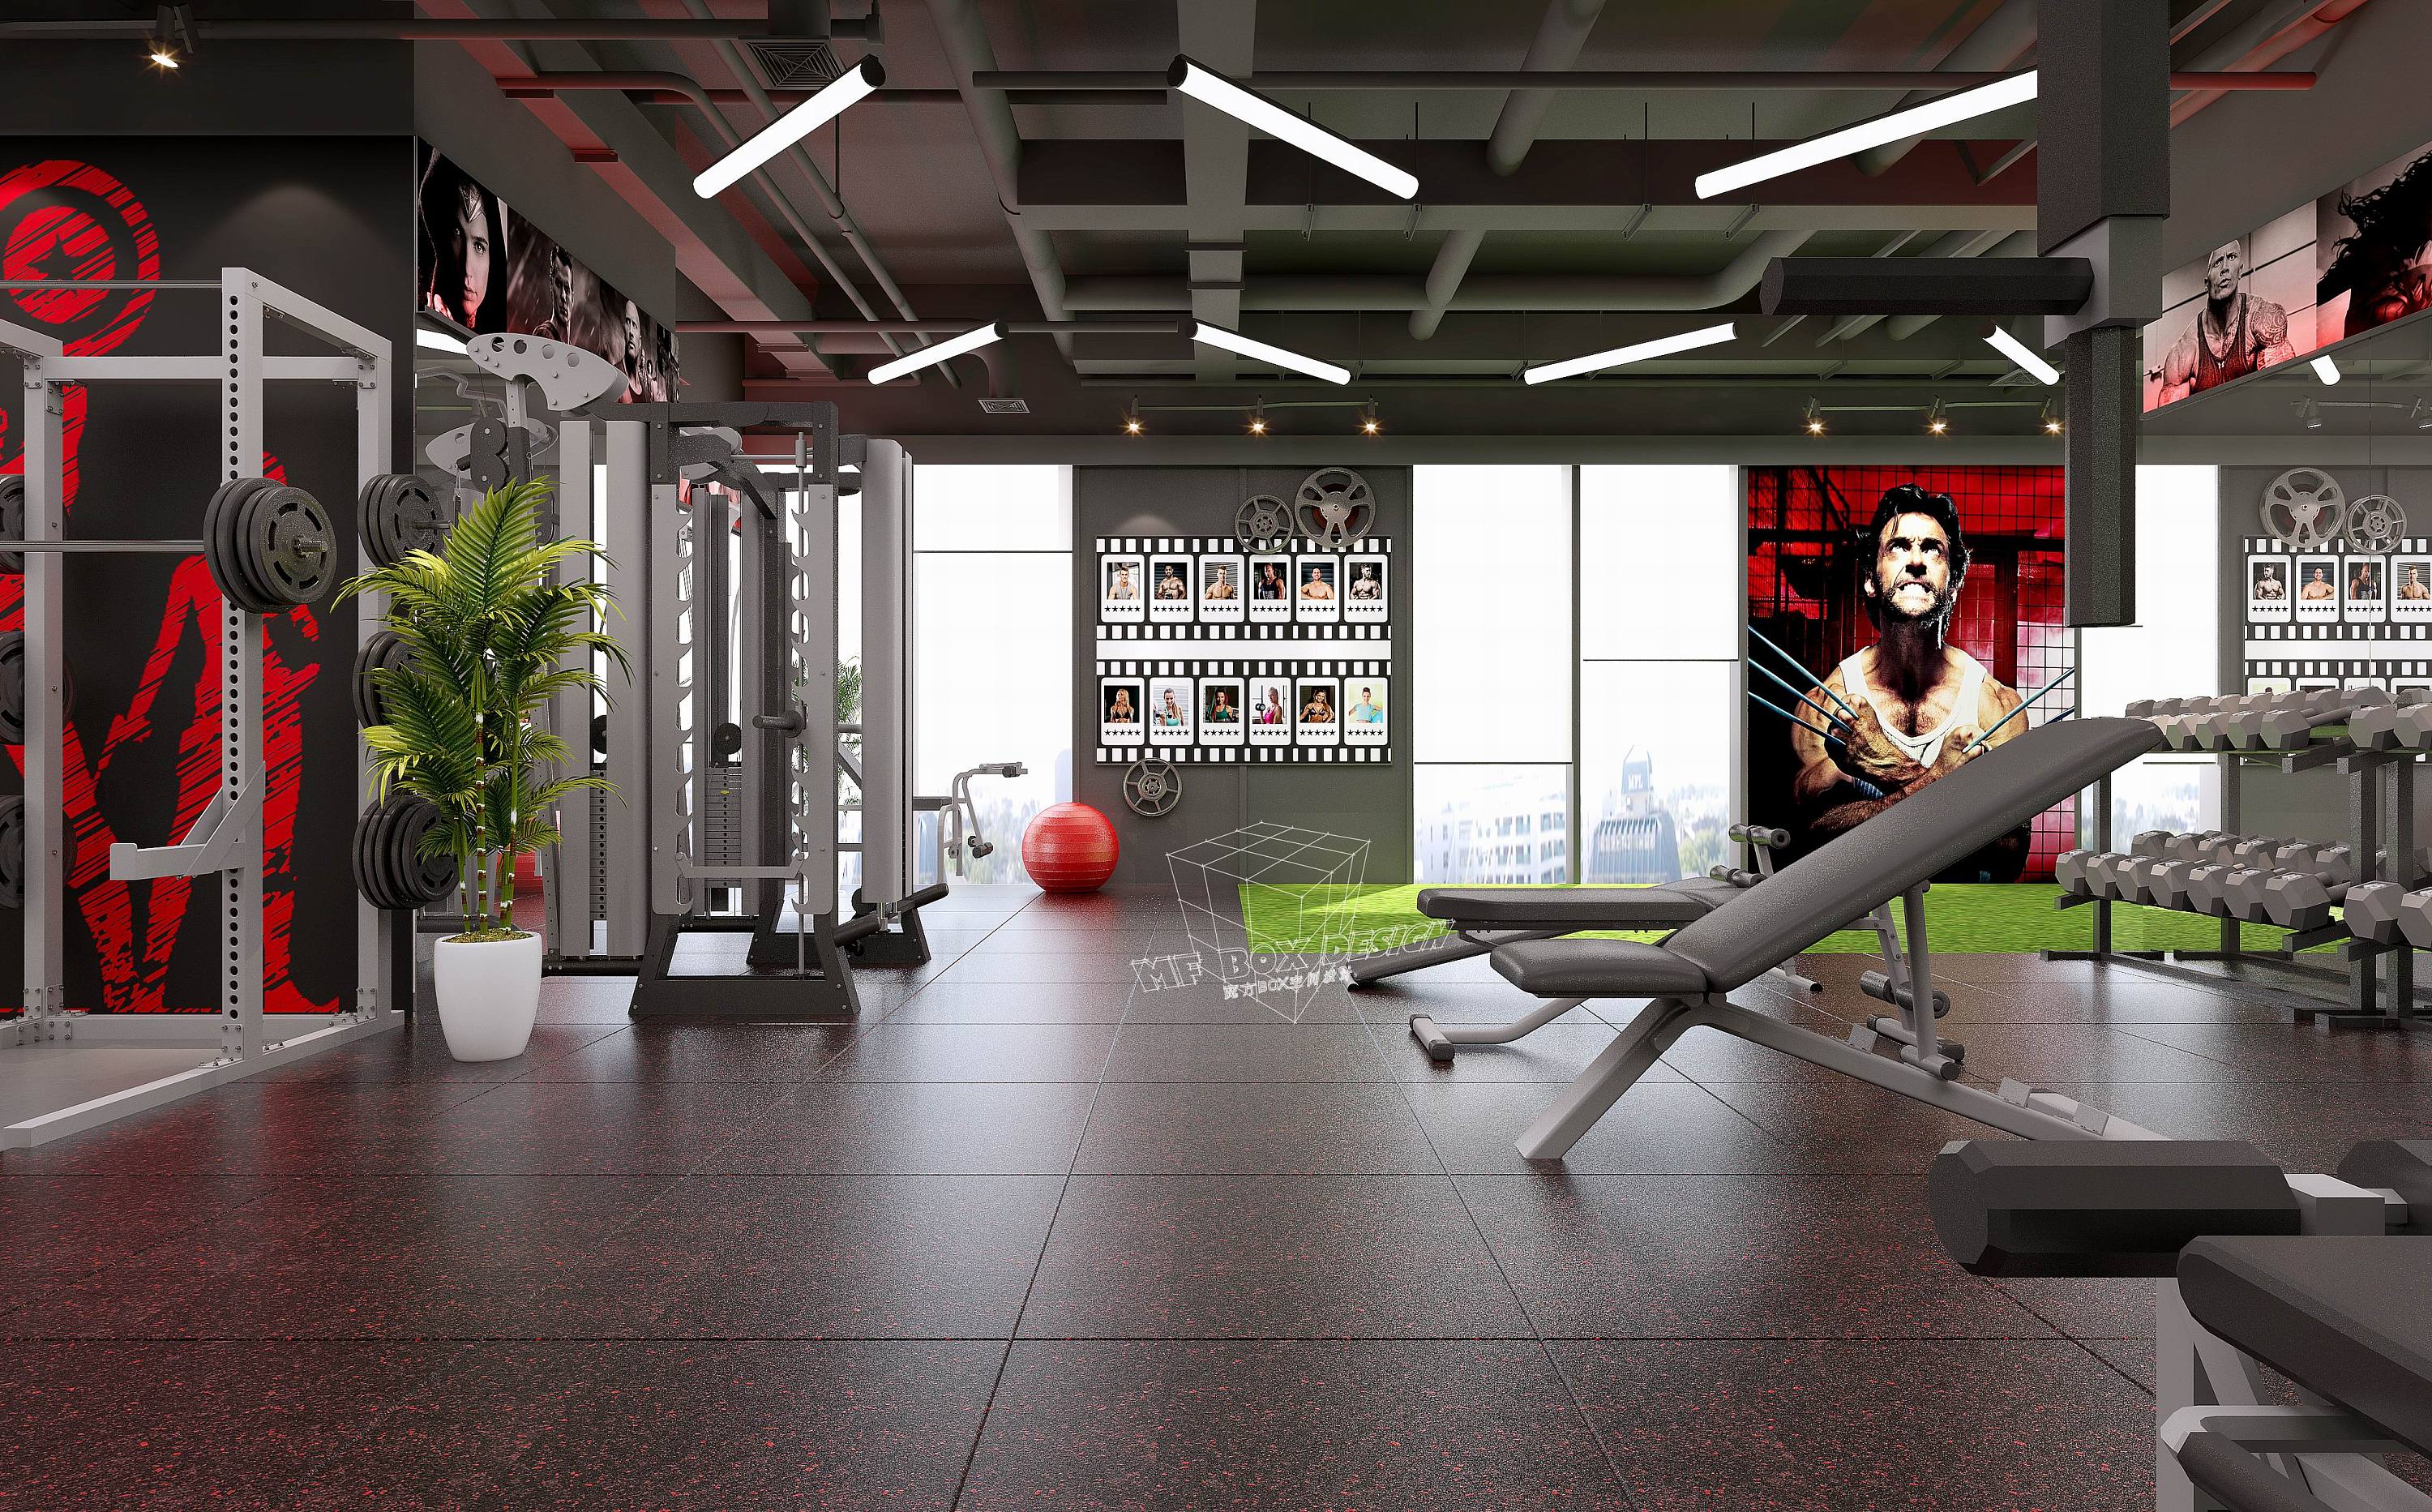 现代健身房全景 - 效果图交流区-建E室内设计网